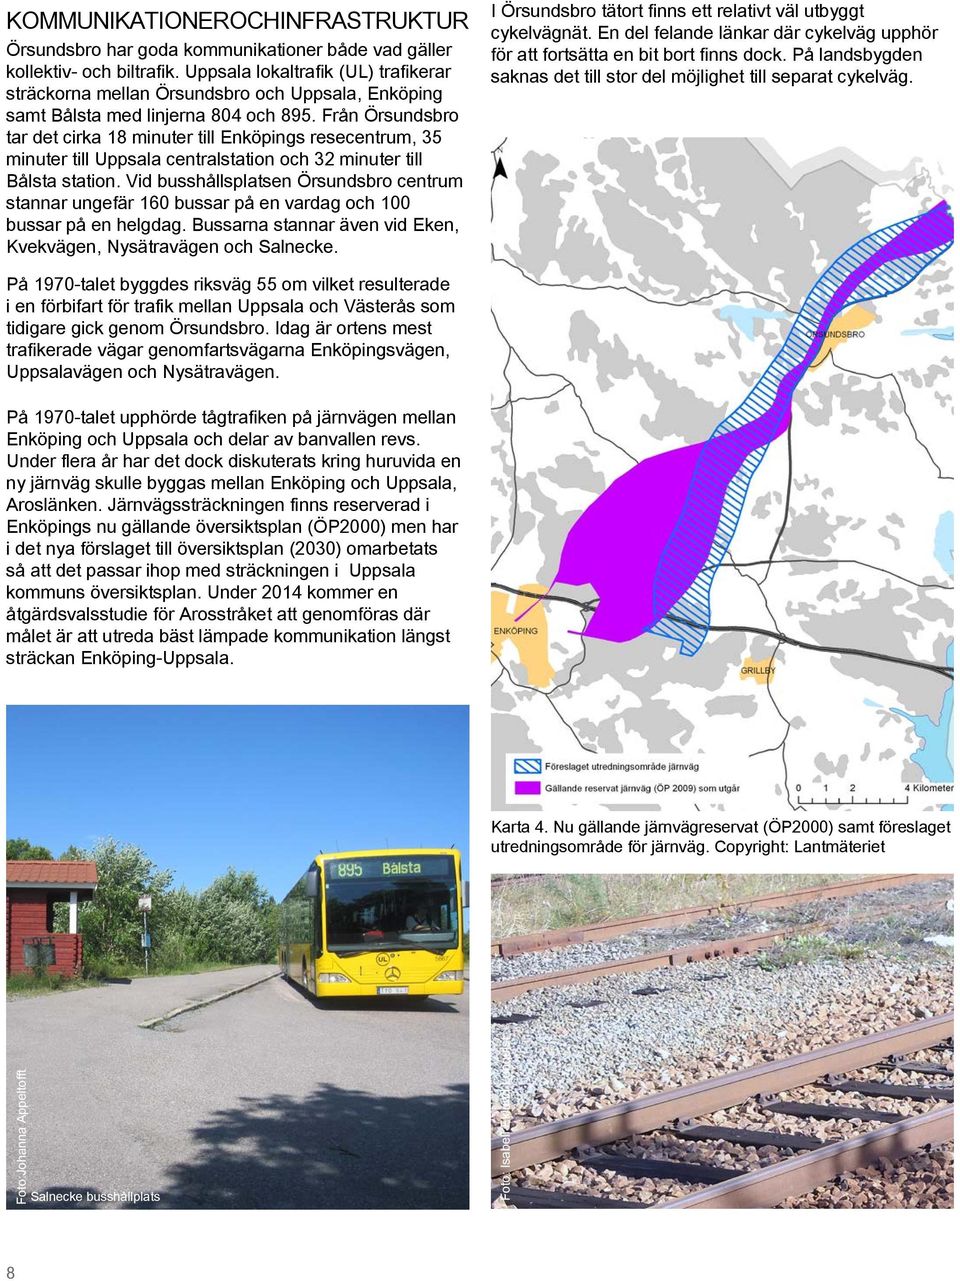 Från Örsundsbro tar det cirka 18 minuter till Enköpings resecentrum, 35 minuter till Uppsala centralstation och 32 minuter till Bålsta station.